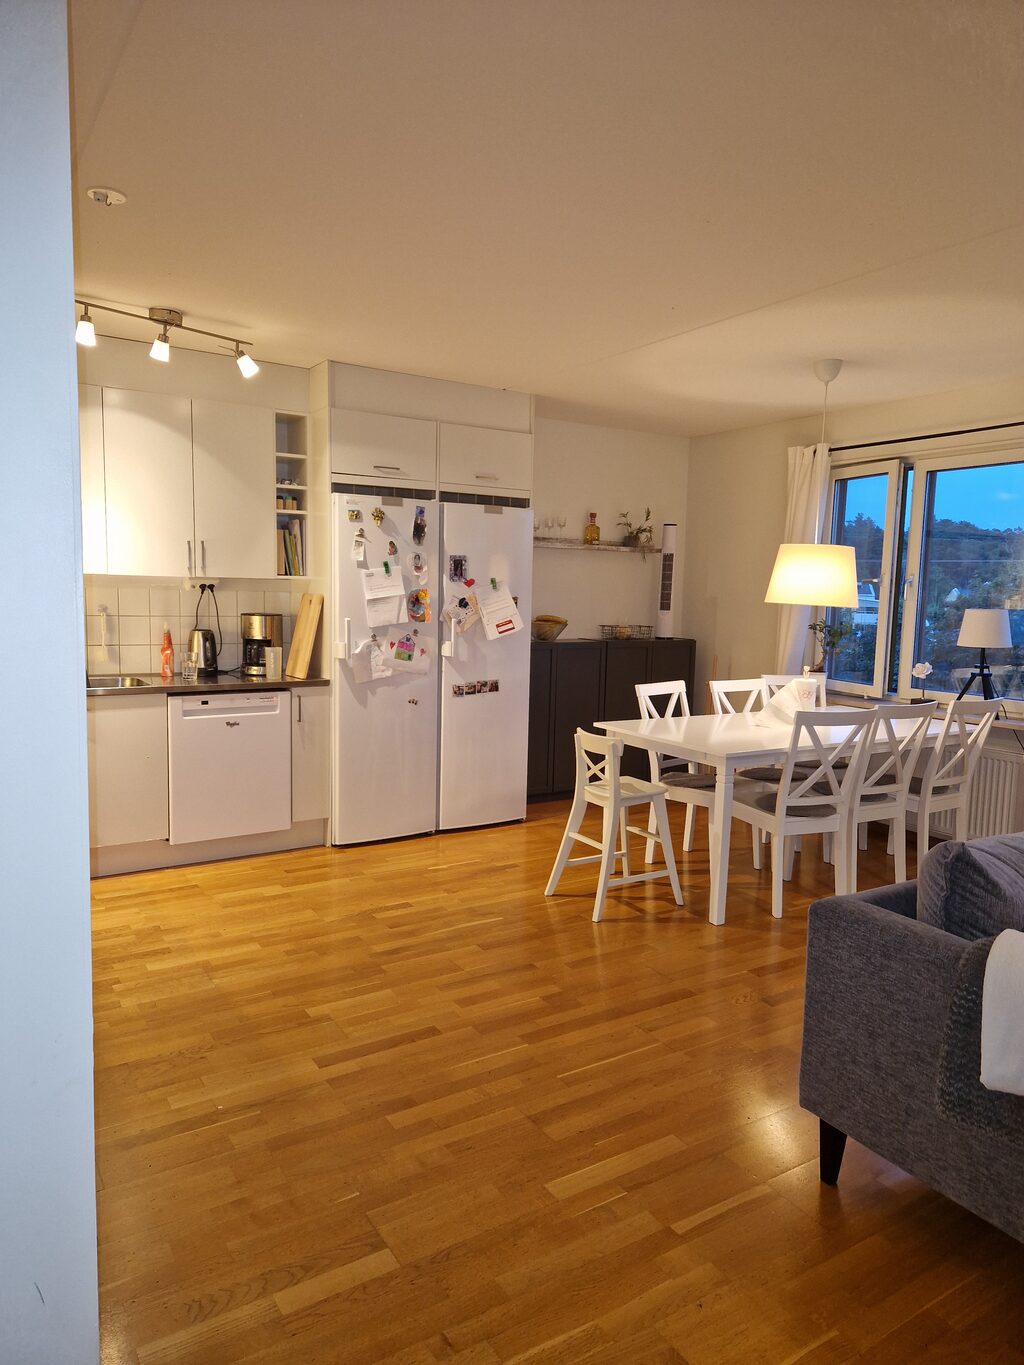 Lägenhetsbyte - Råckstavägen 29, 162 54 Vällingby